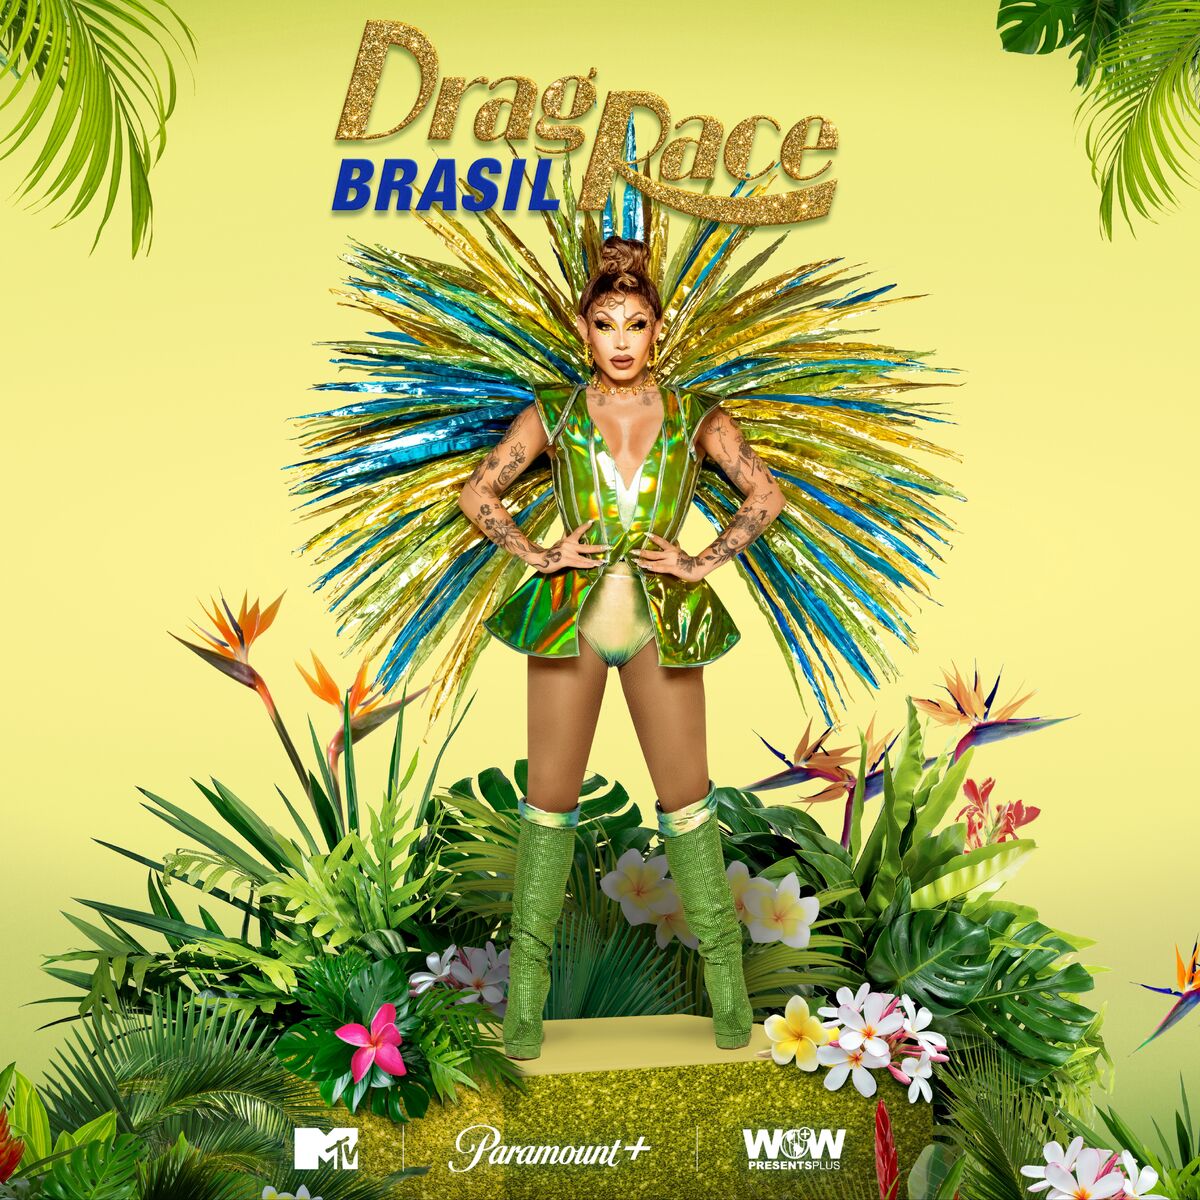 SPOILERS Drag Race Brasil (BRAZIL) - Casting 1ª temporada 